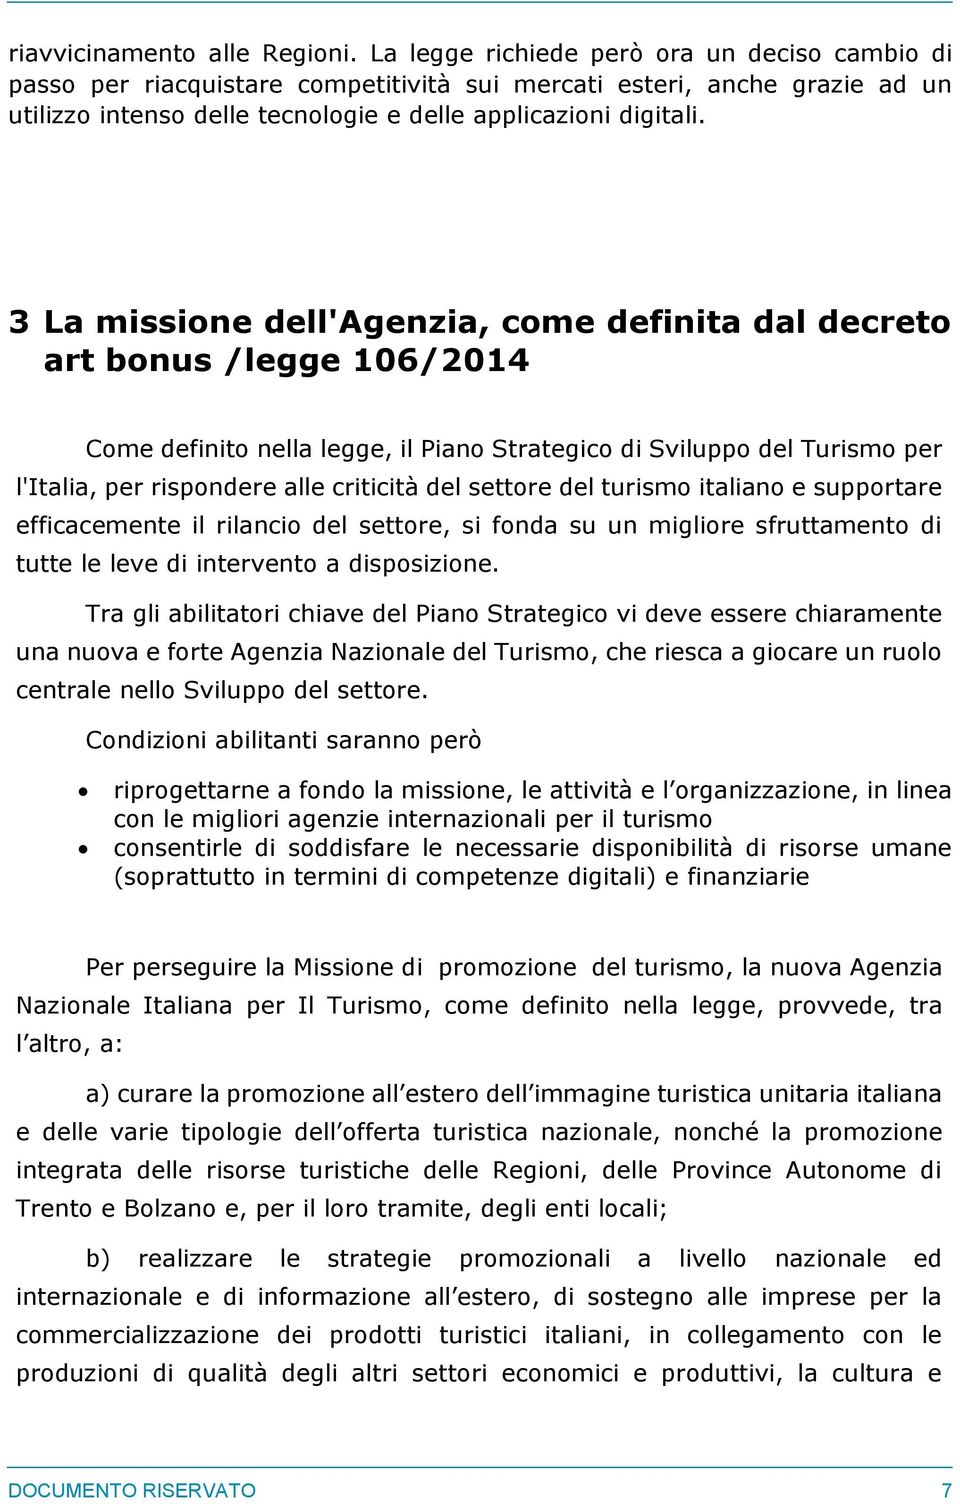 3 La missione dell'agenzia, come definita dal decreto art bonus /legge 106/2014 Come definito nella legge, il Piano Strategico di Sviluppo del Turismo per l'italia, per rispondere alle criticità del